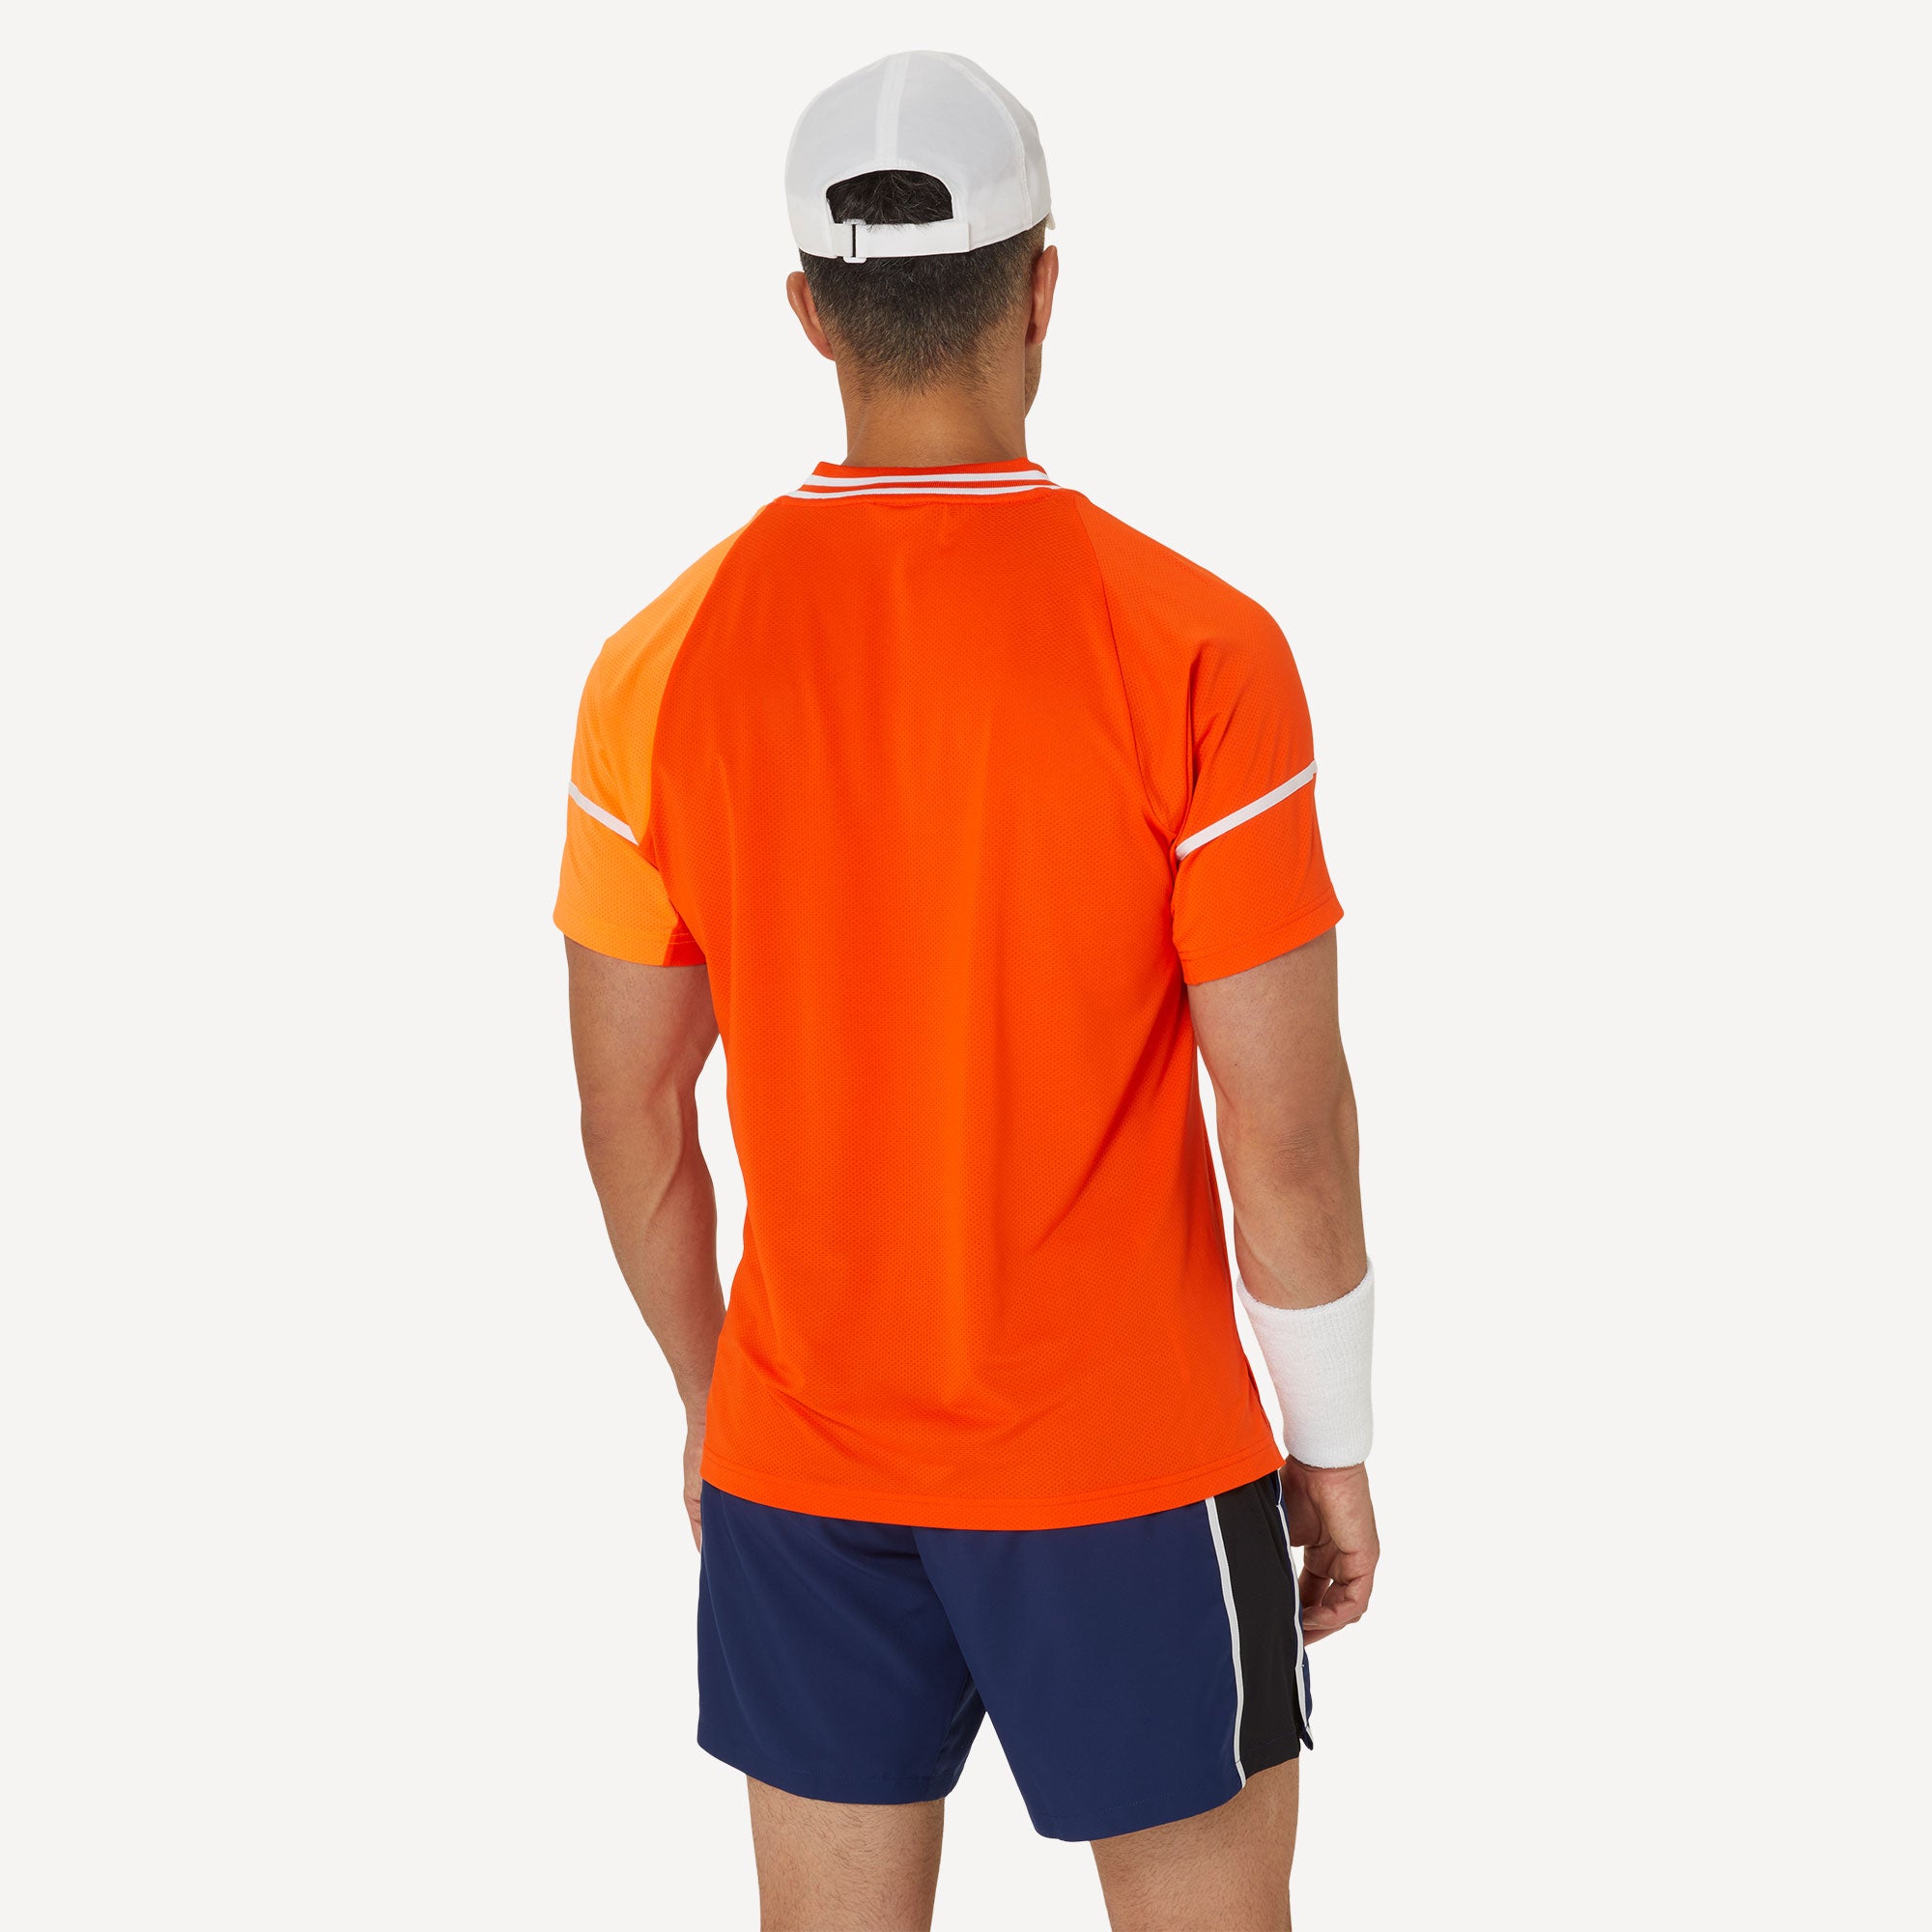 ASICS Match Men's Tennis Shirt - Orange (2)